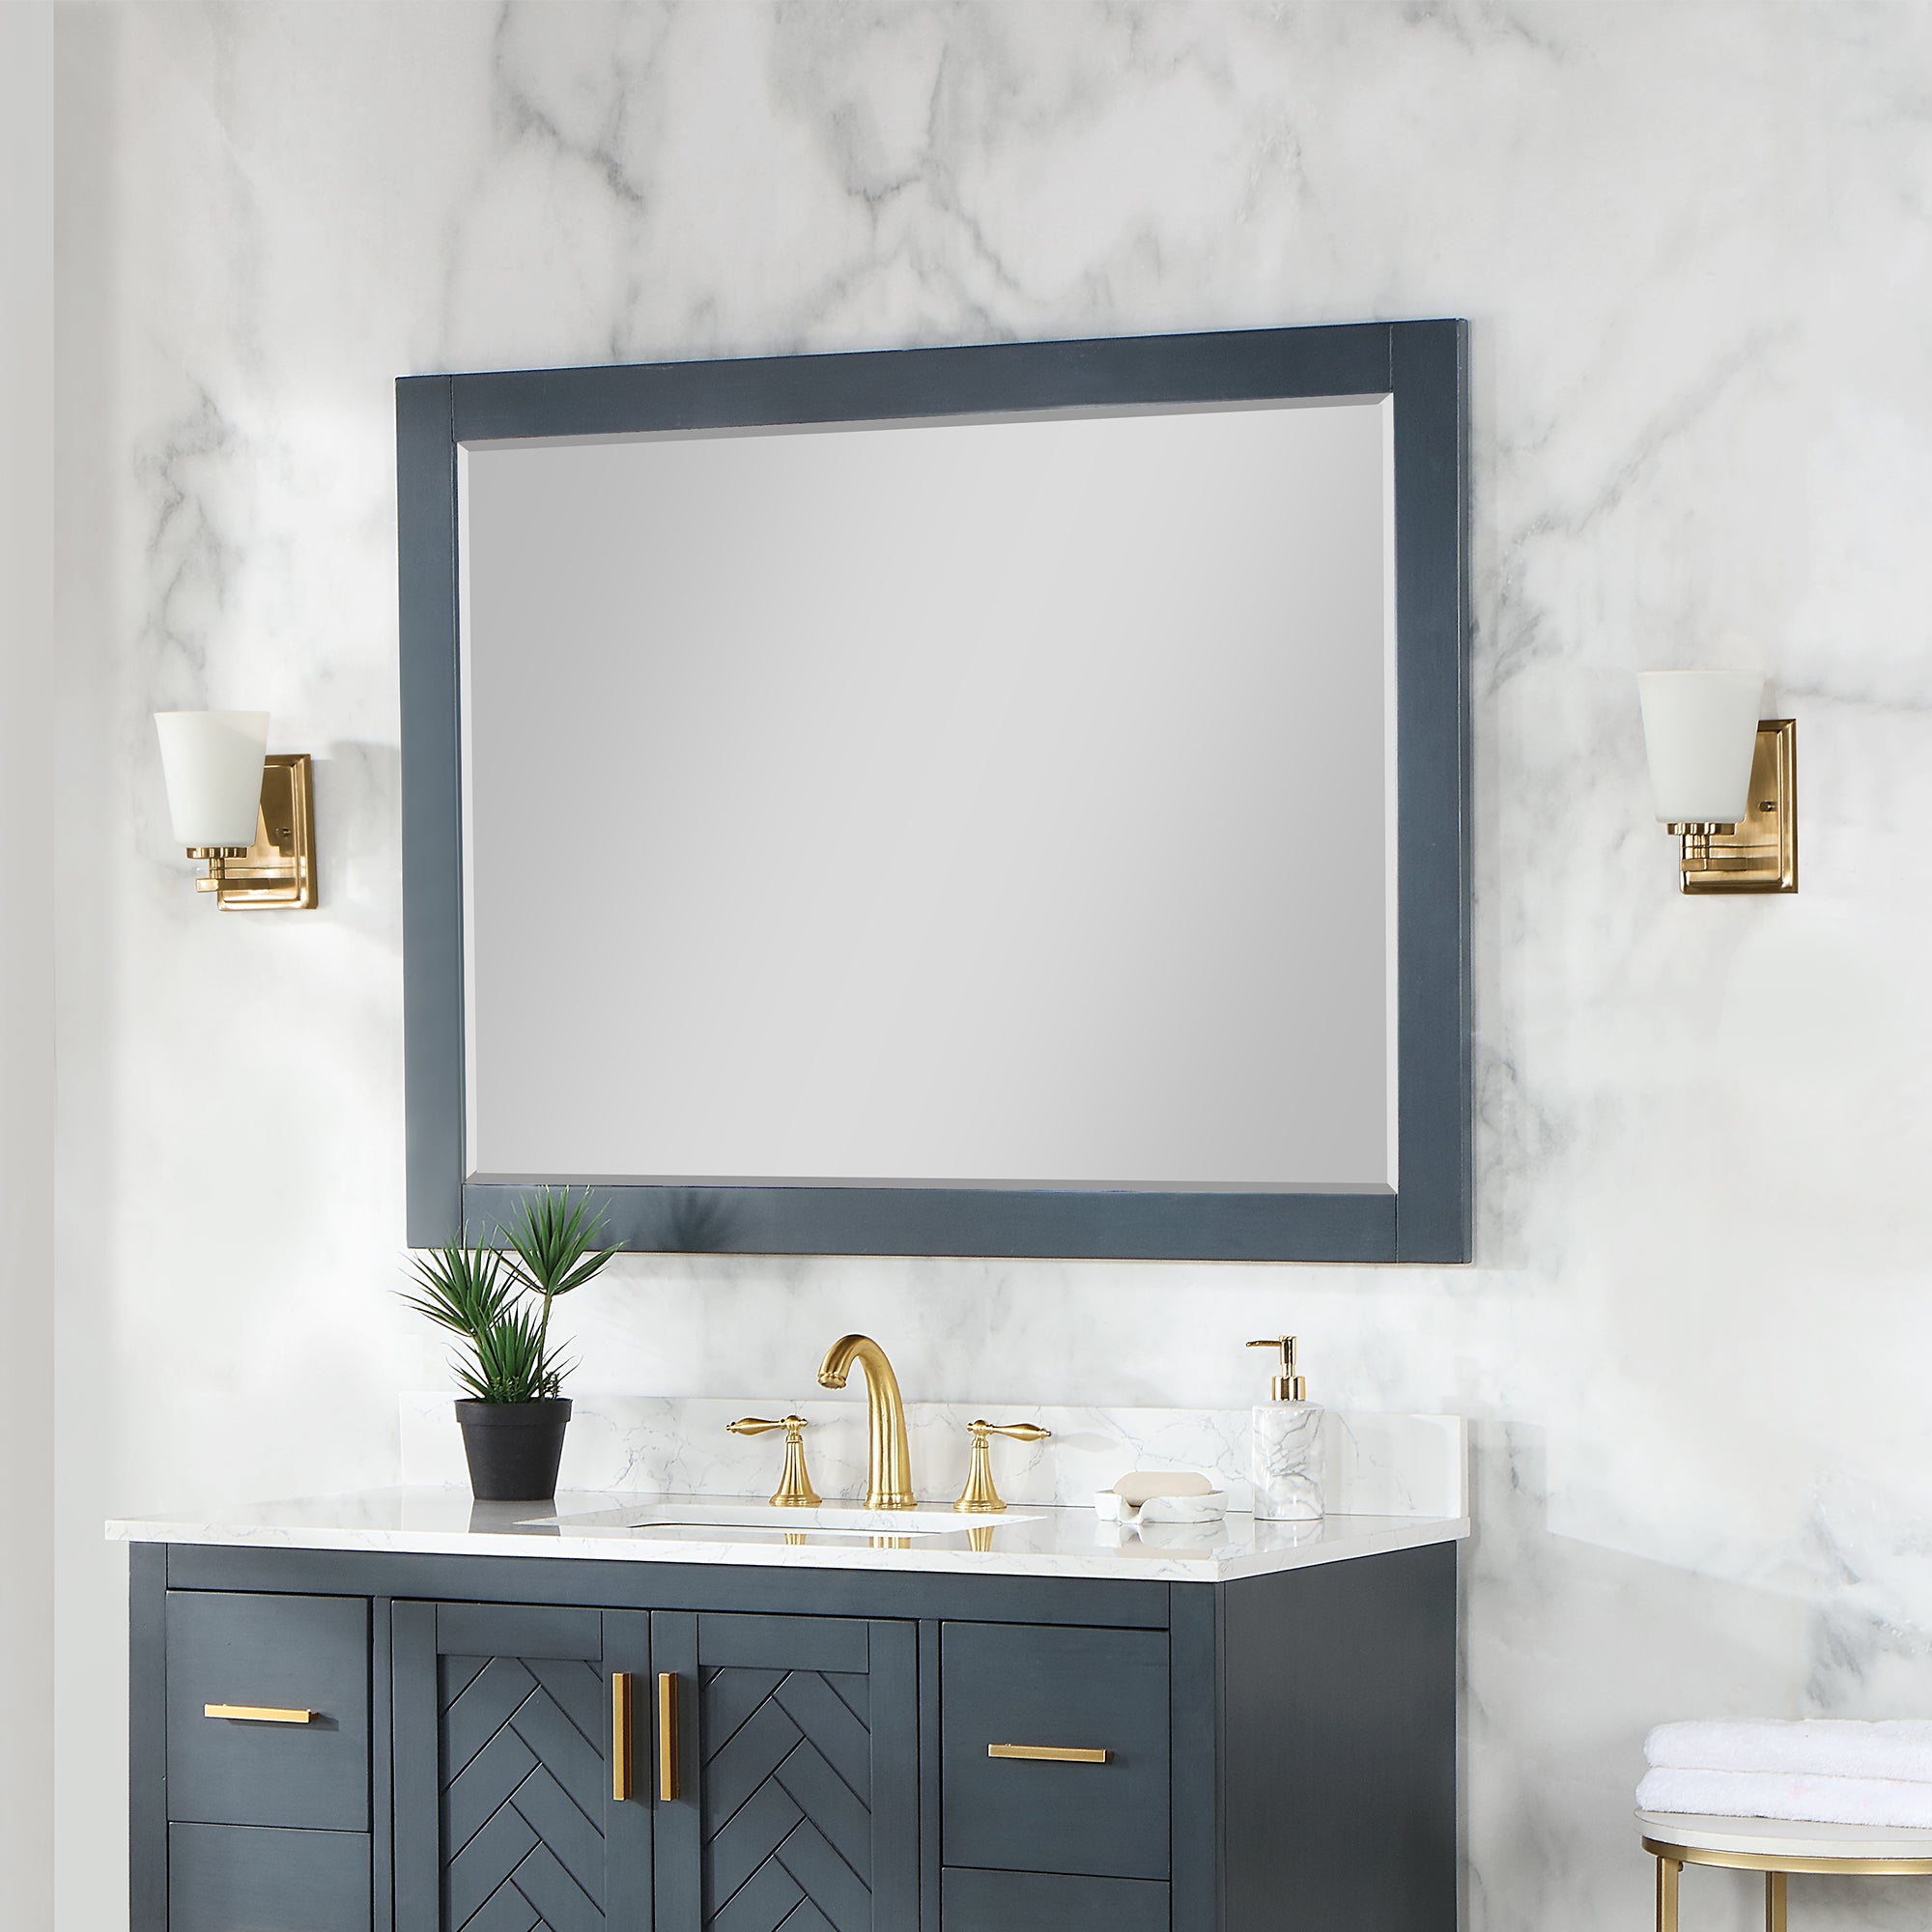 Maribella 48" Rectangular Bathroom Wood Framed Wall Mirror